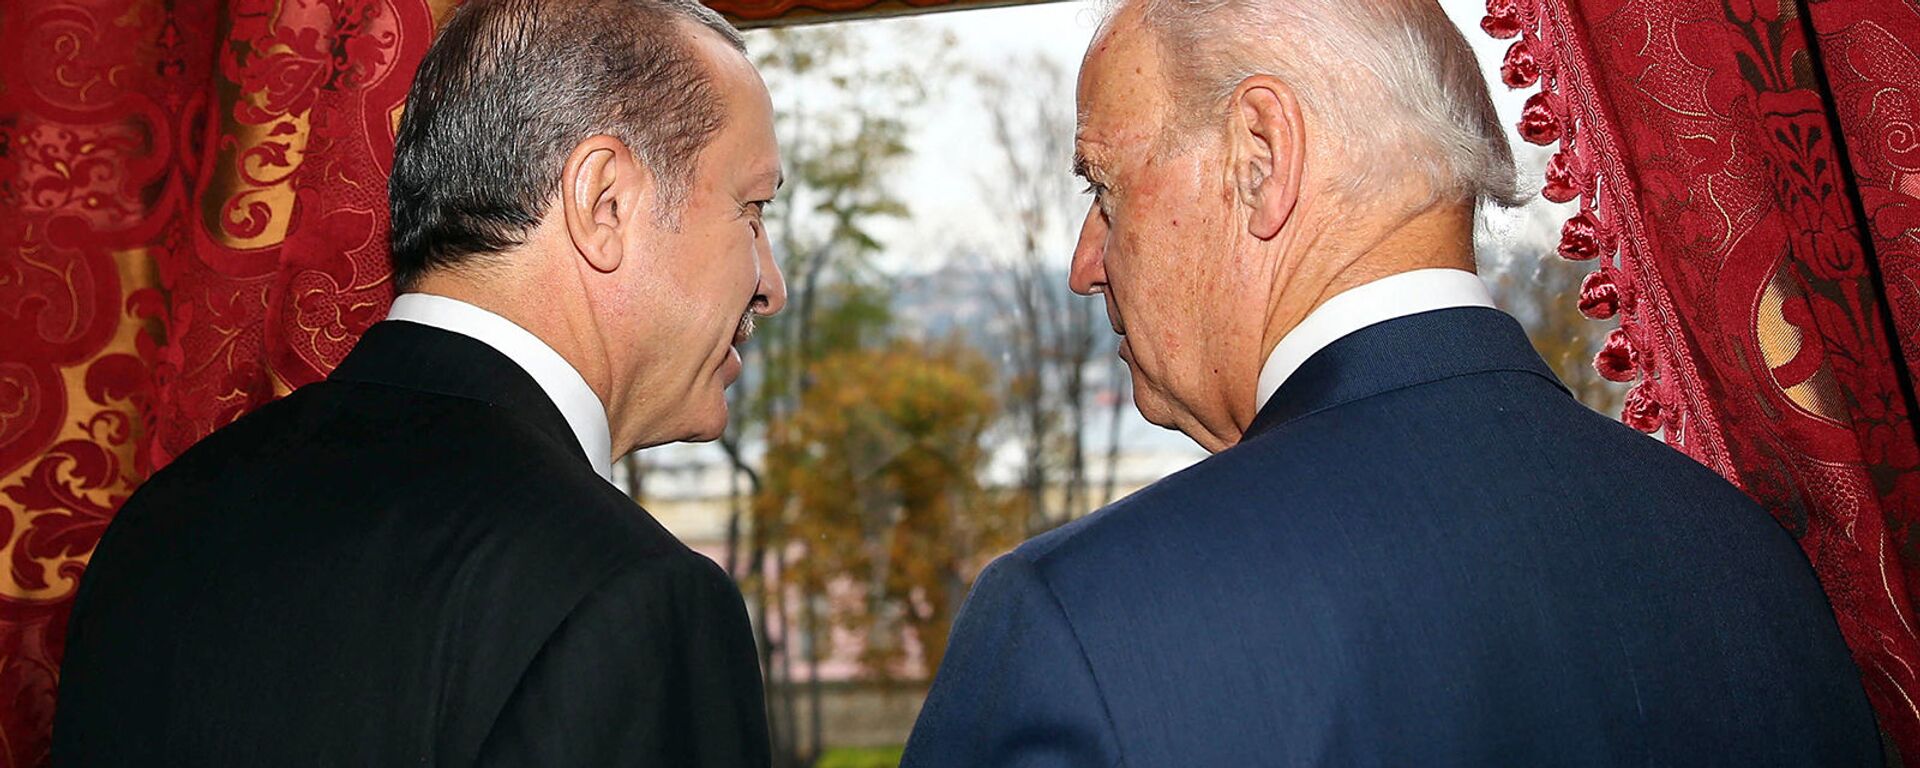 Беседа вице-президента США Джо Байдена с президентом Турции Реджепом Эрдоганом во дворце Бейлербейи (22 ноября 2014).  Стамбул - Sputnik Армения, 1920, 23.04.2021